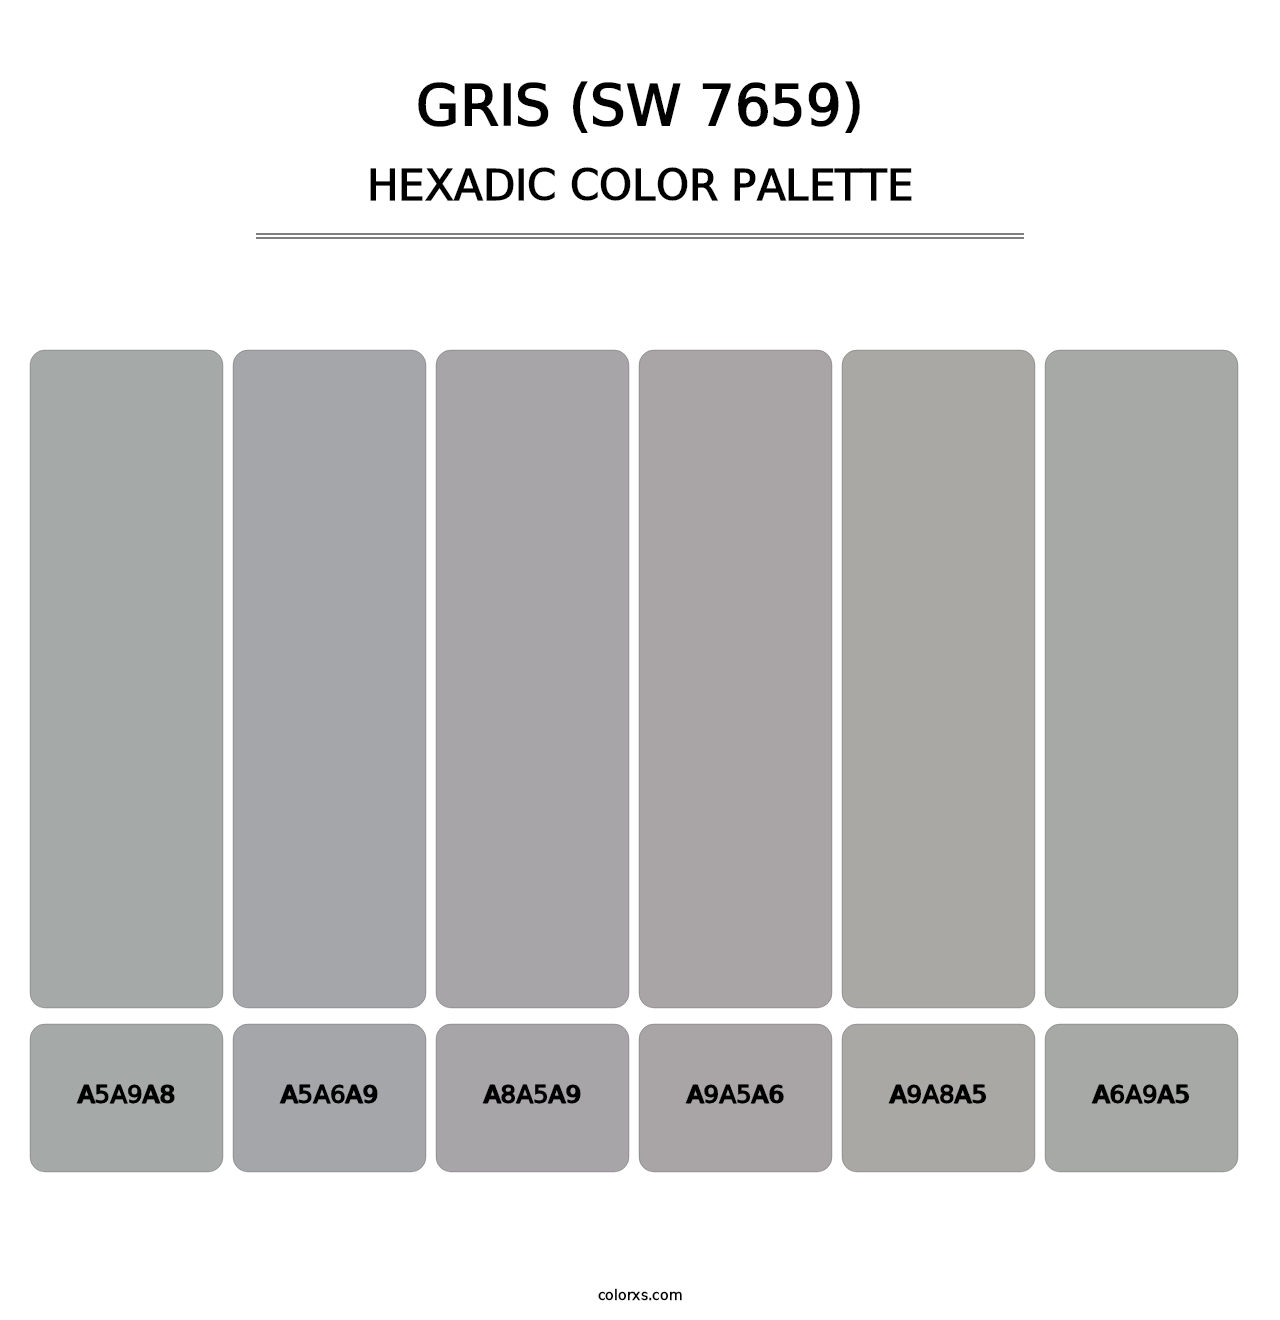 Gris (SW 7659) - Hexadic Color Palette